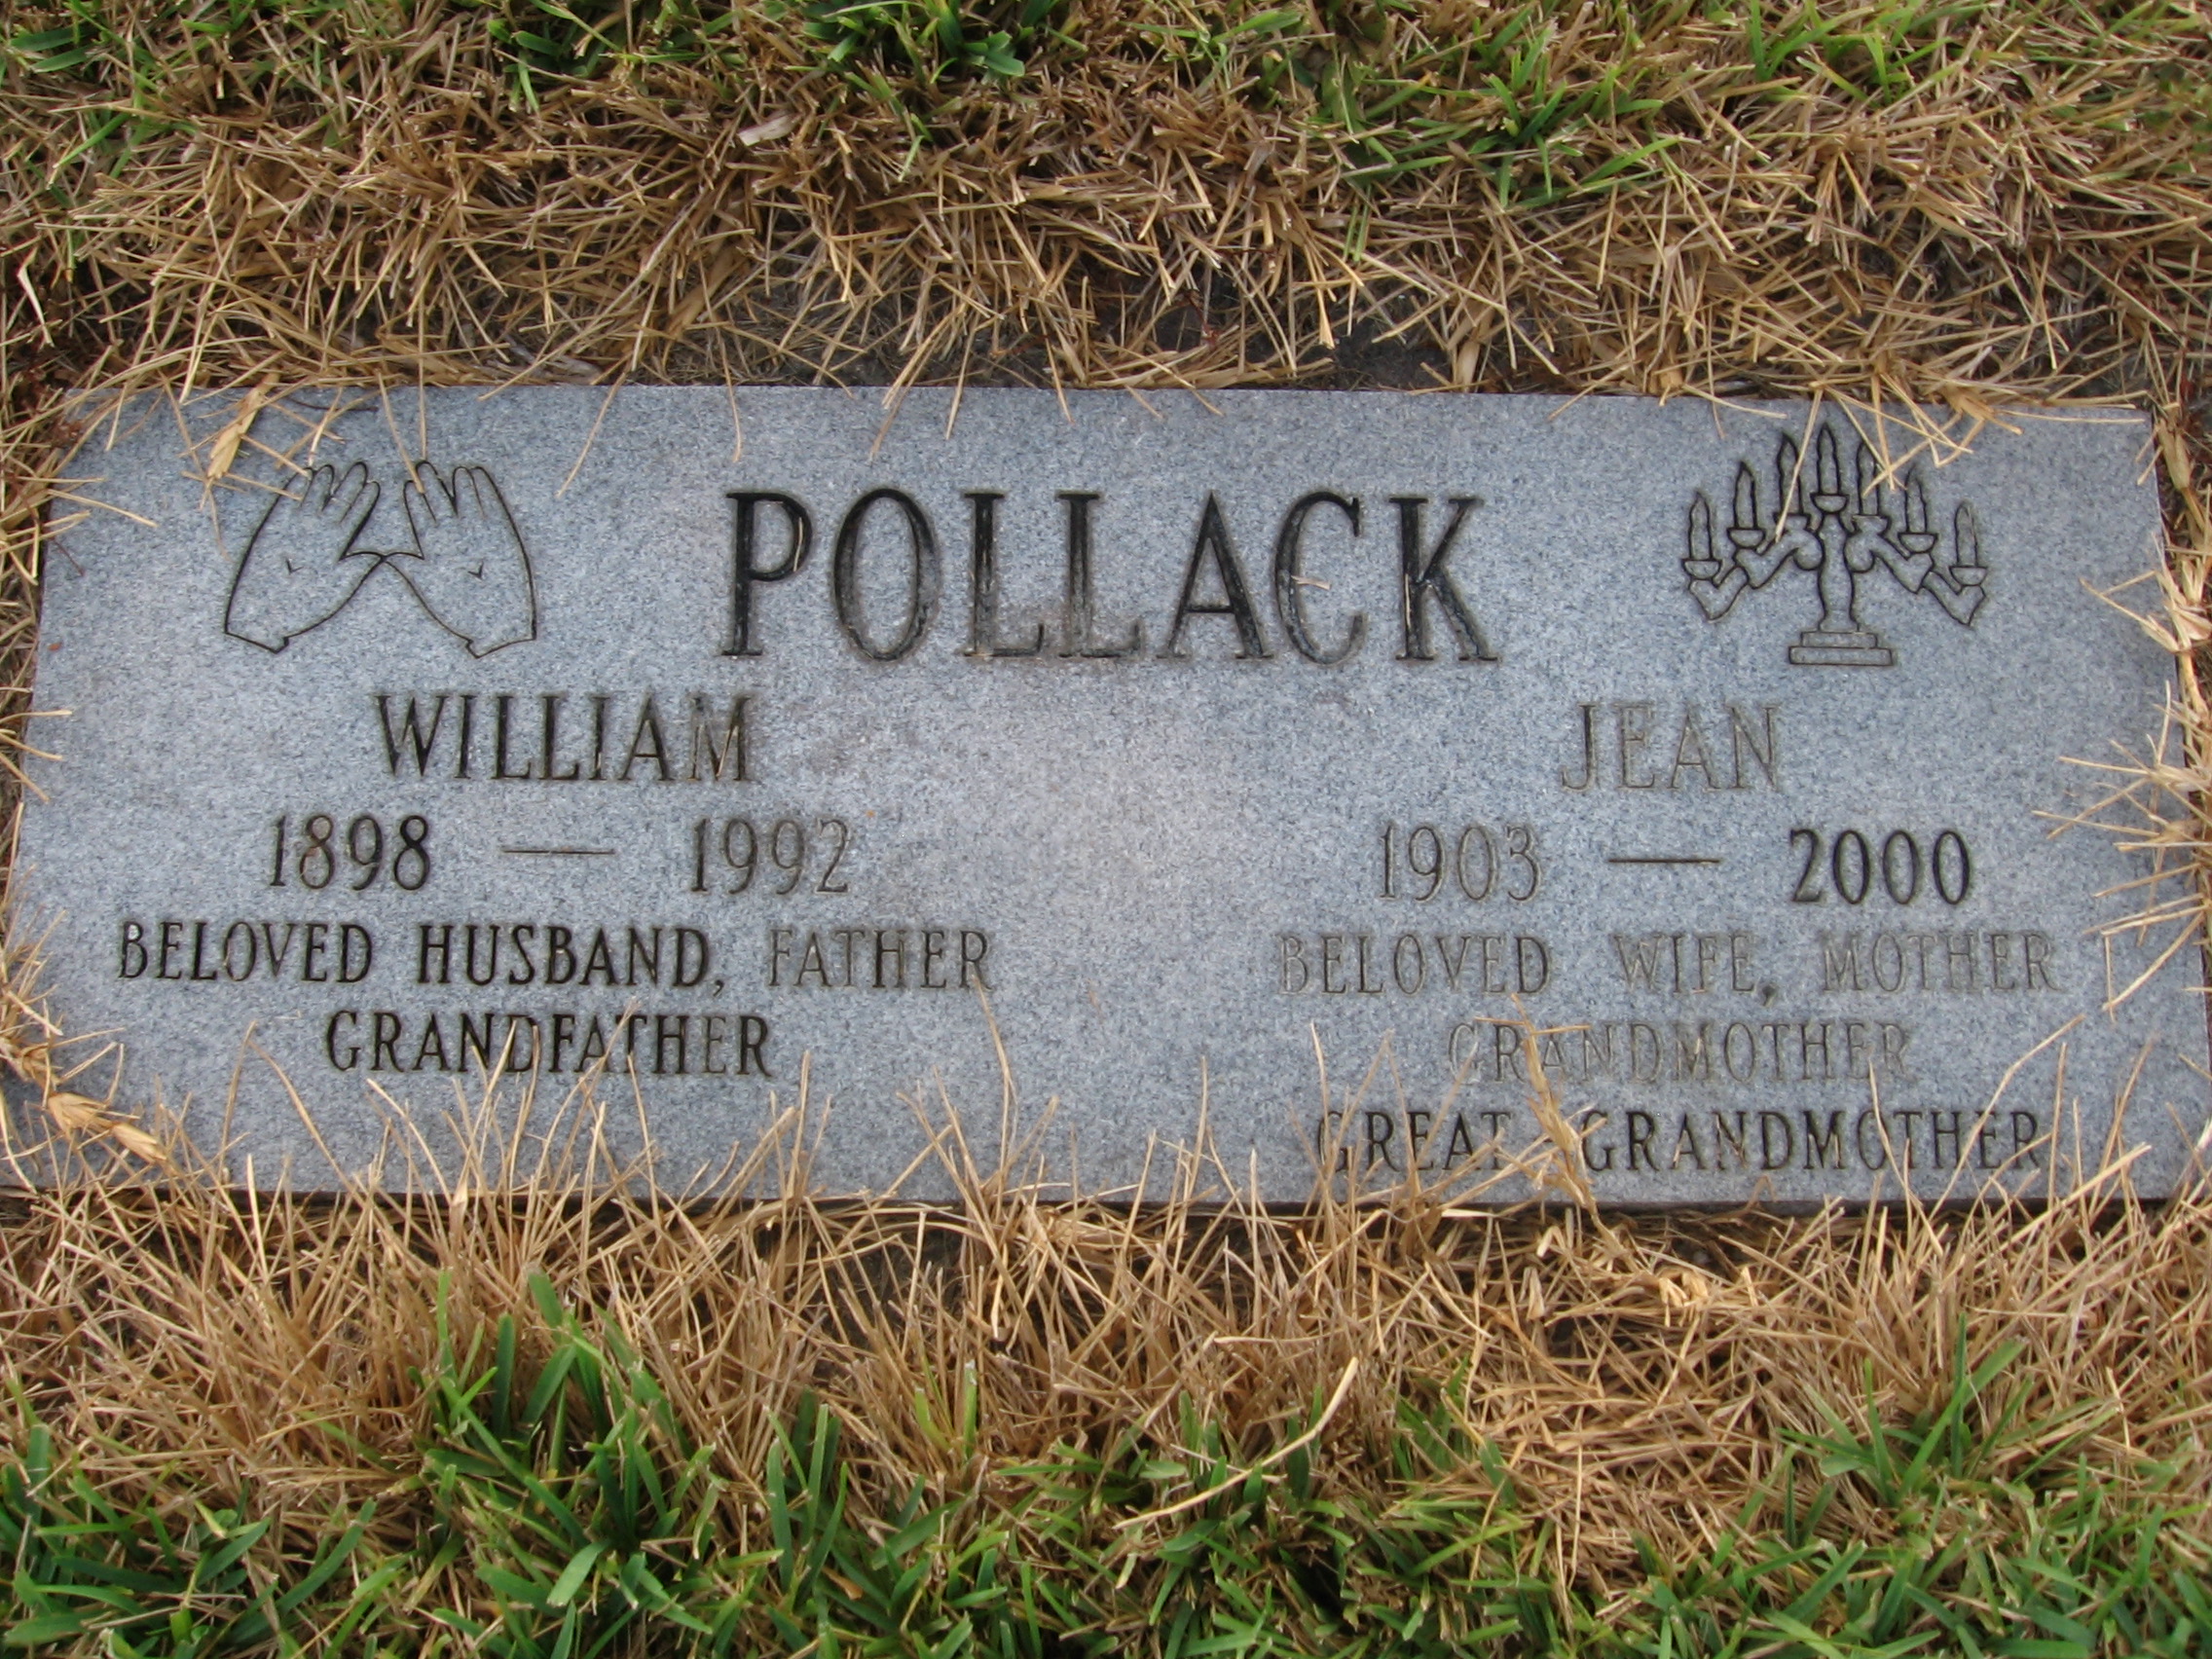 William Pollack